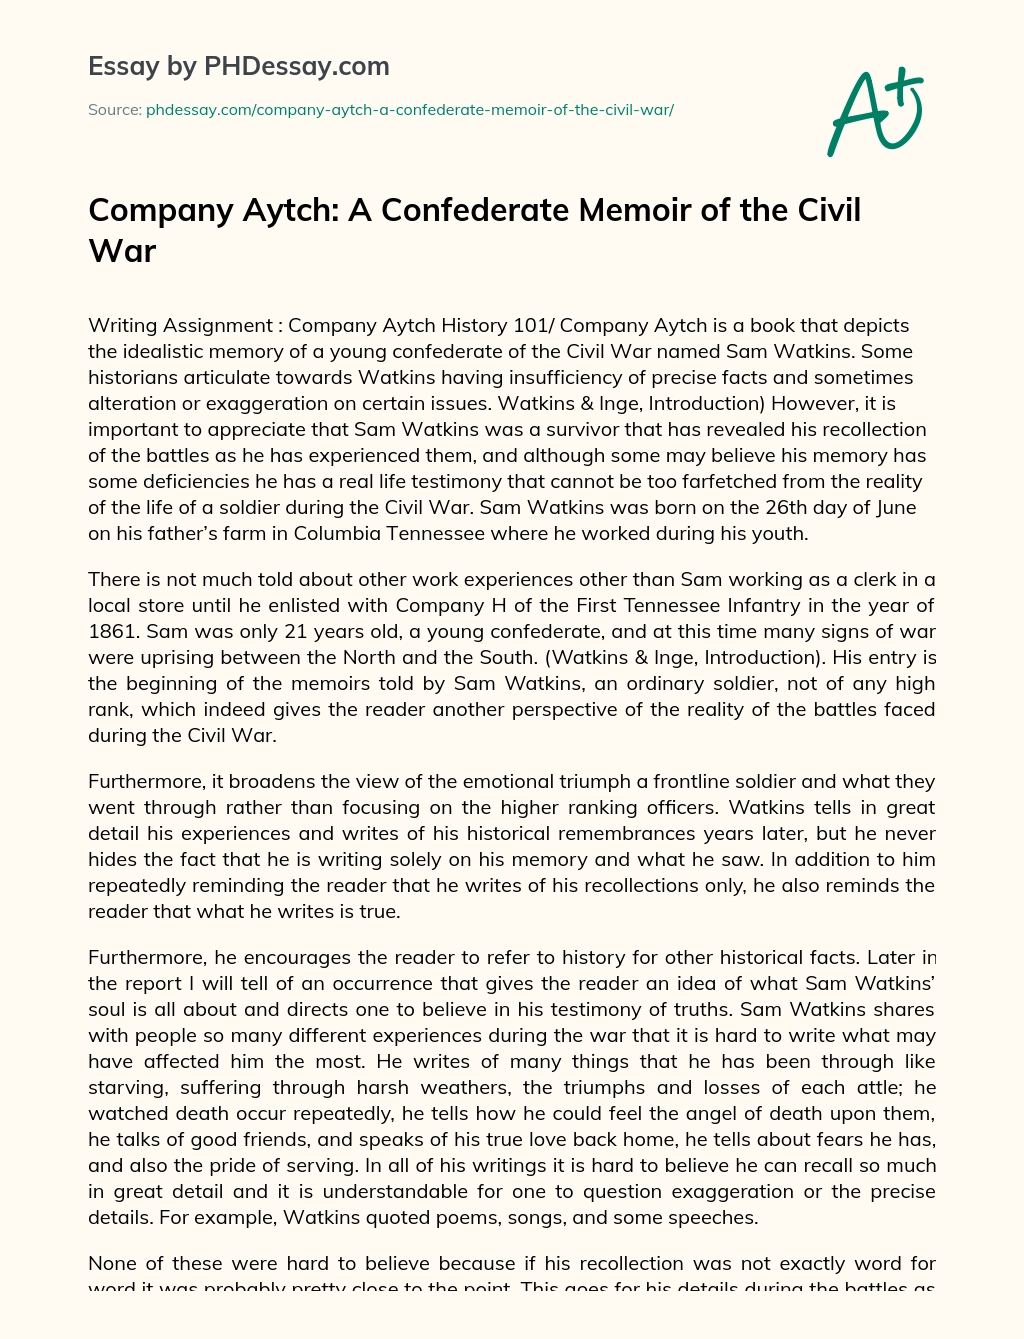 Company Aytch: A Confederate Memoir of the Civil War essay